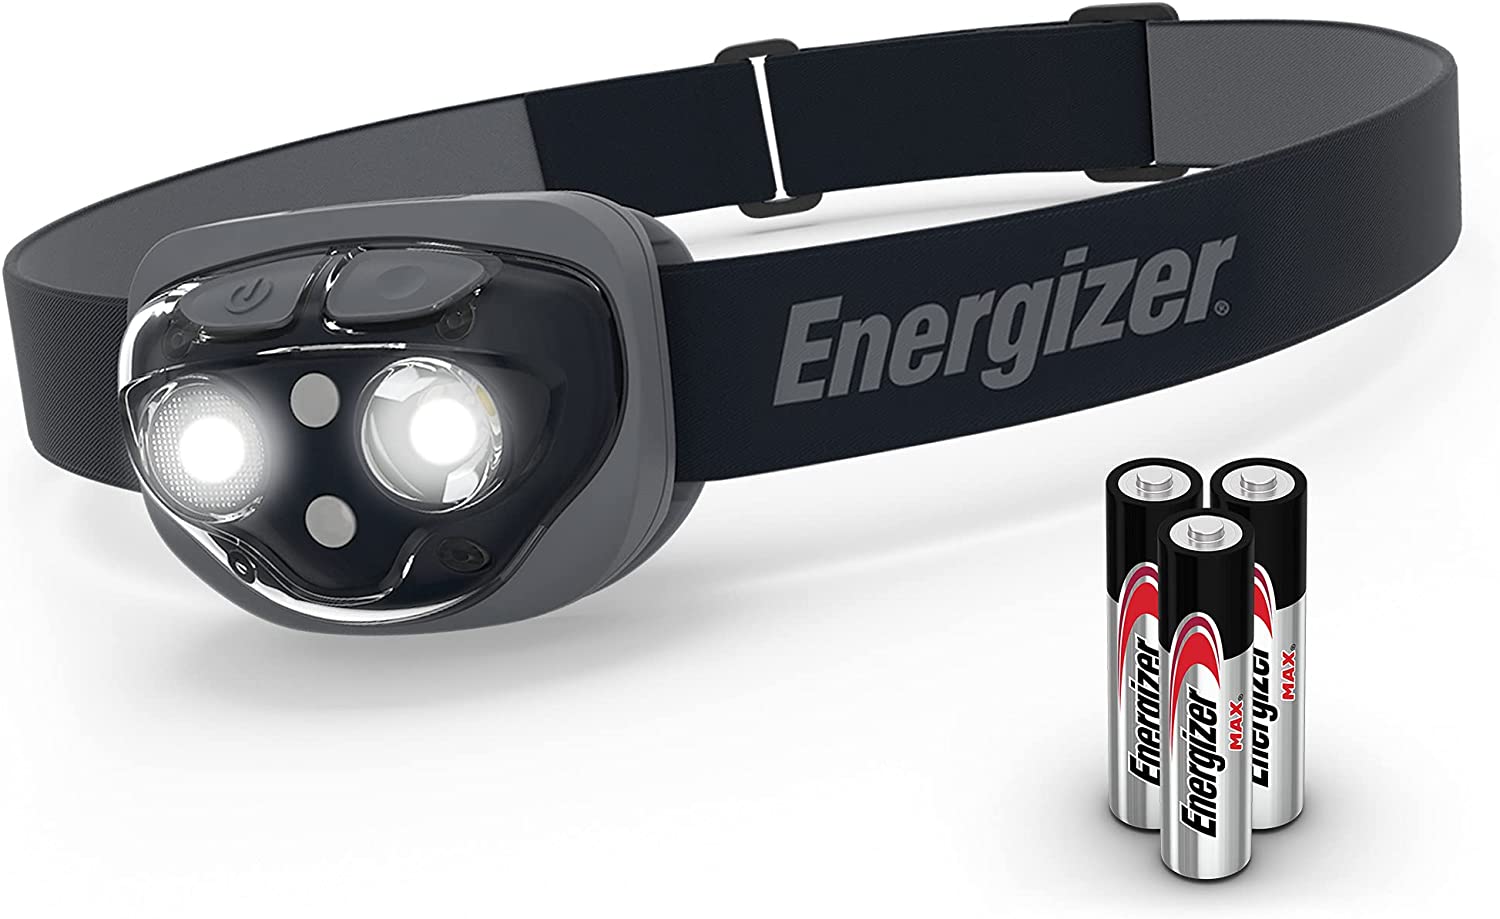 【美國代購】ENERGIZER LED 頭燈 Pro360,堅固的 IPX4 防水頭燈,超亮頭燈,適用於跑步、露營、戶外、暴風雨停電(內含電池)